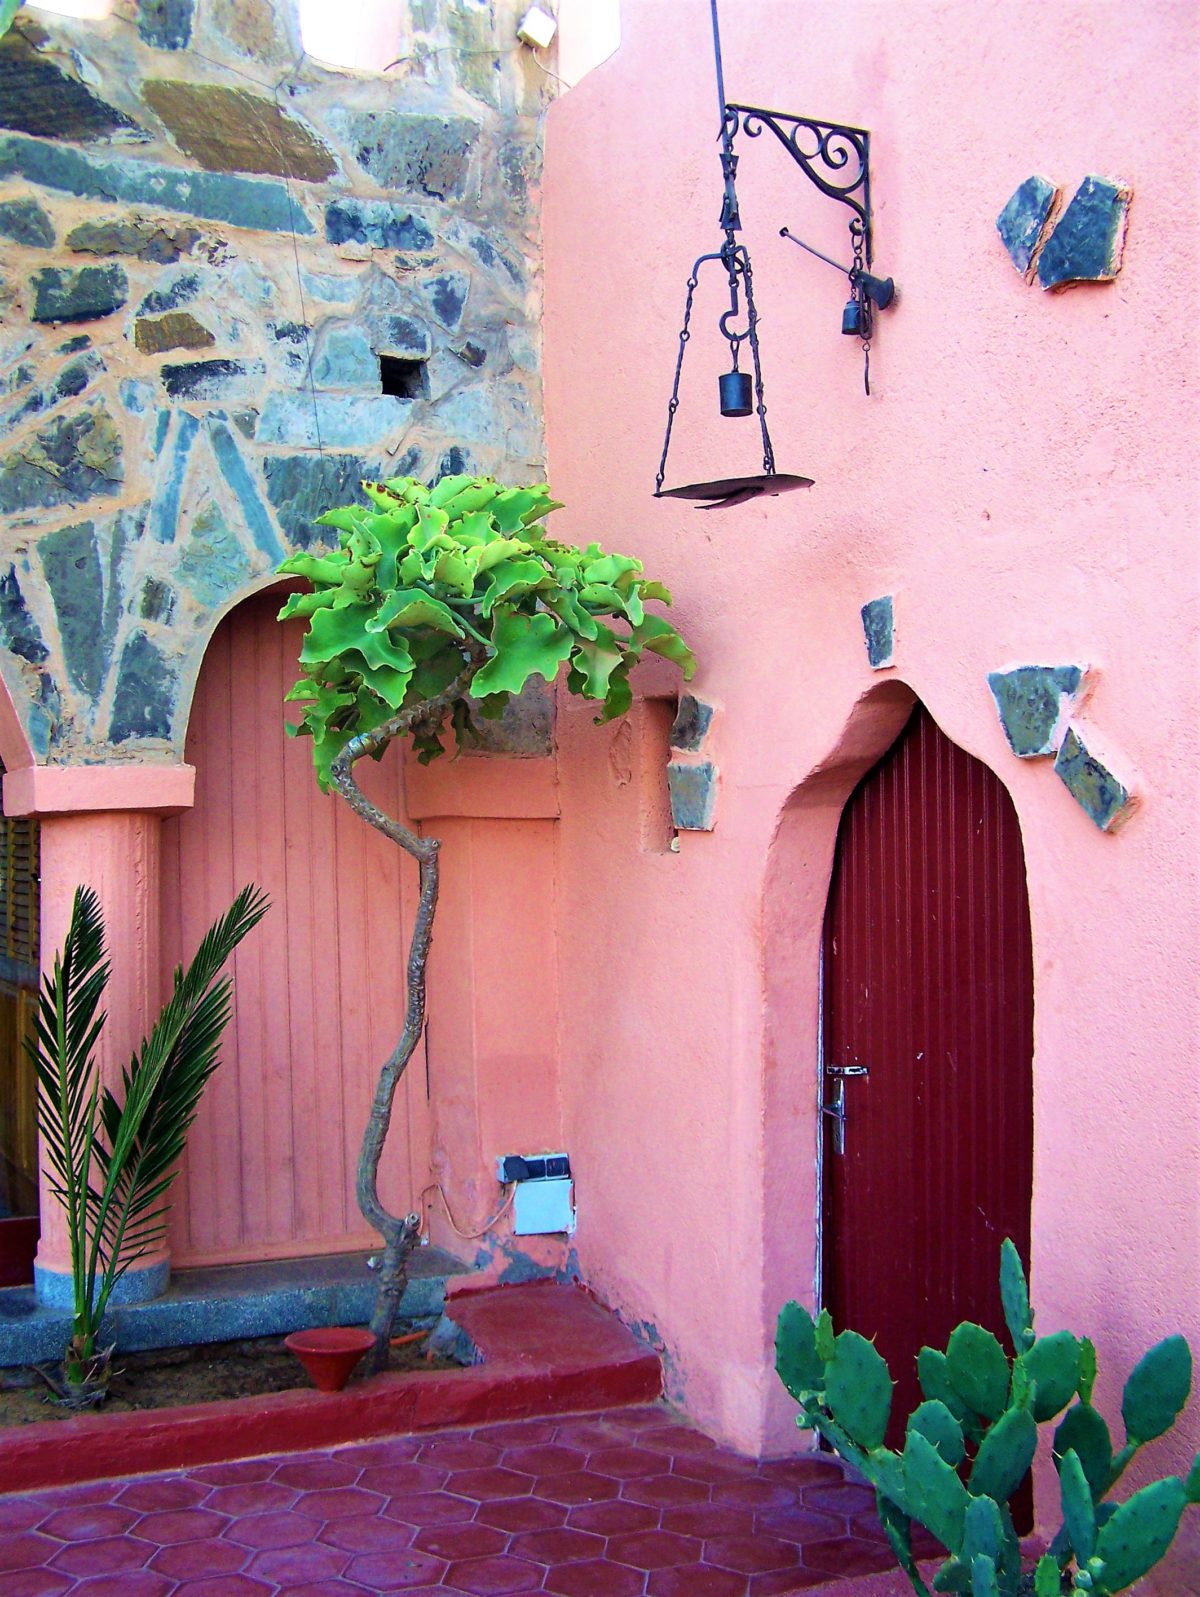 Wejście do jednego z domów w Górach Atlasu w Maroku